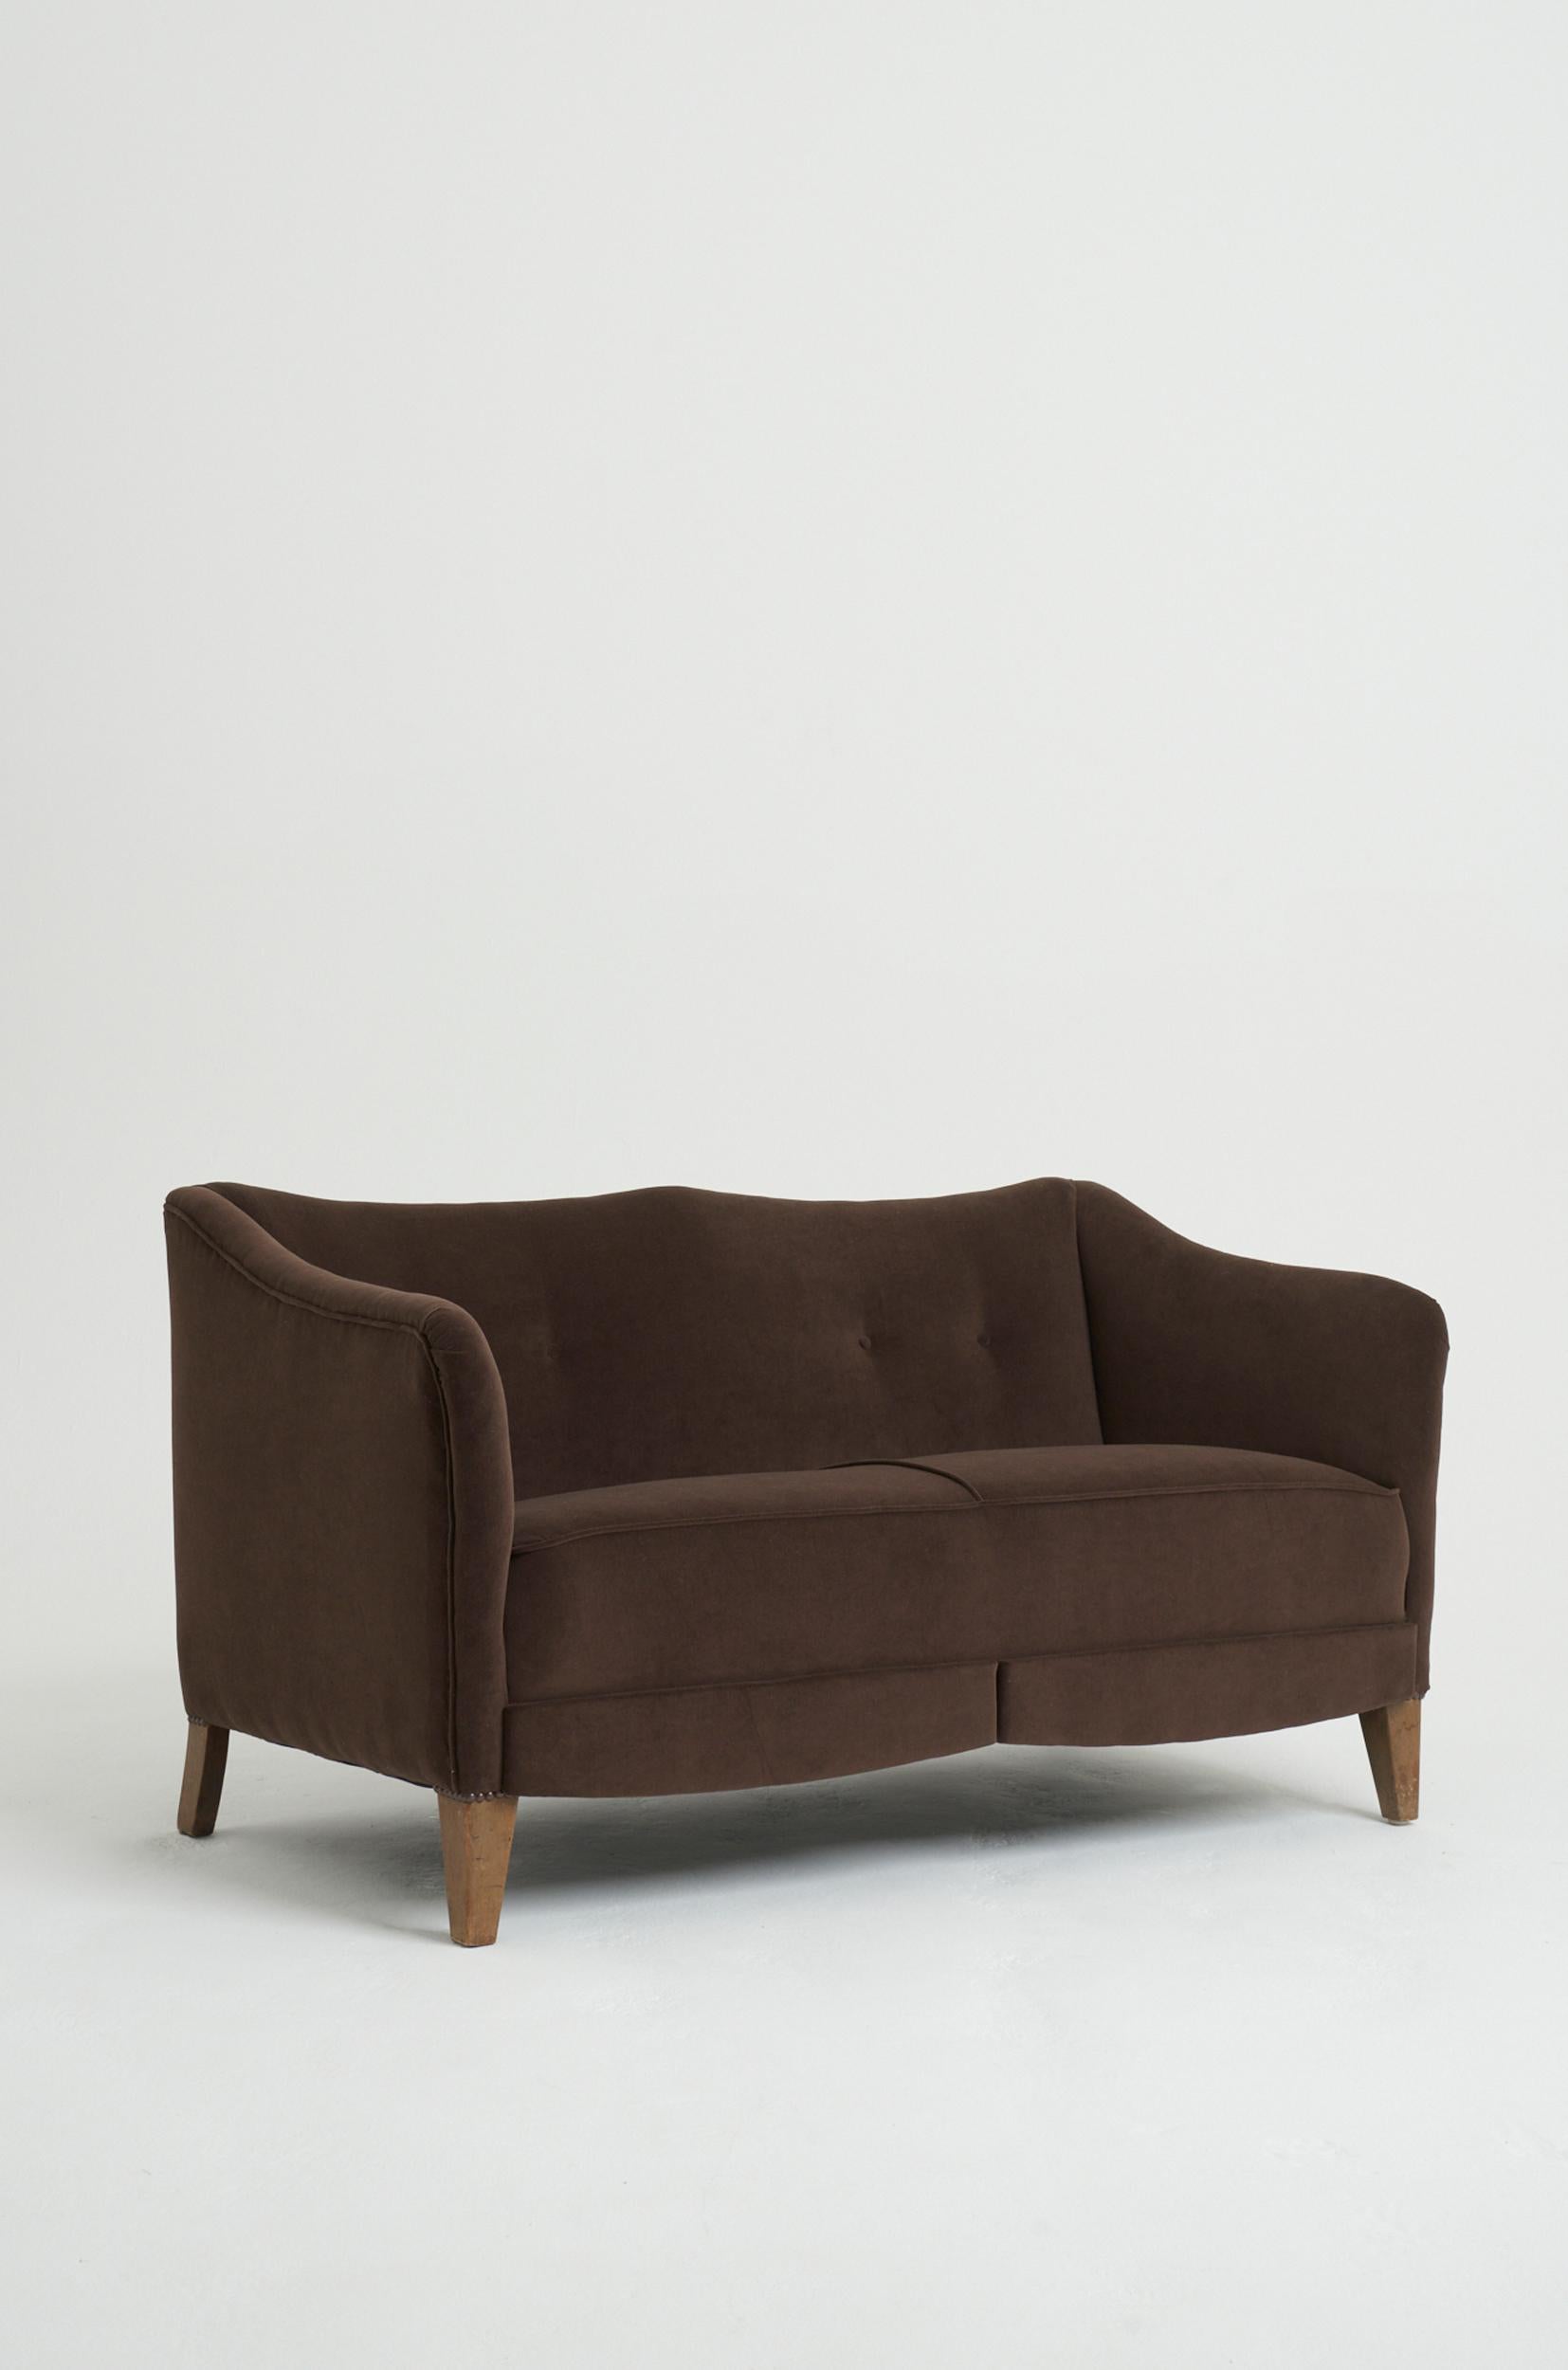 Zweisitziges Sofa mit Knöpfen
Schweden, ca. 1930-1940
71 cm hoch x 131 cm breit x 66 cm tief, Sitzhöhe 41 cm